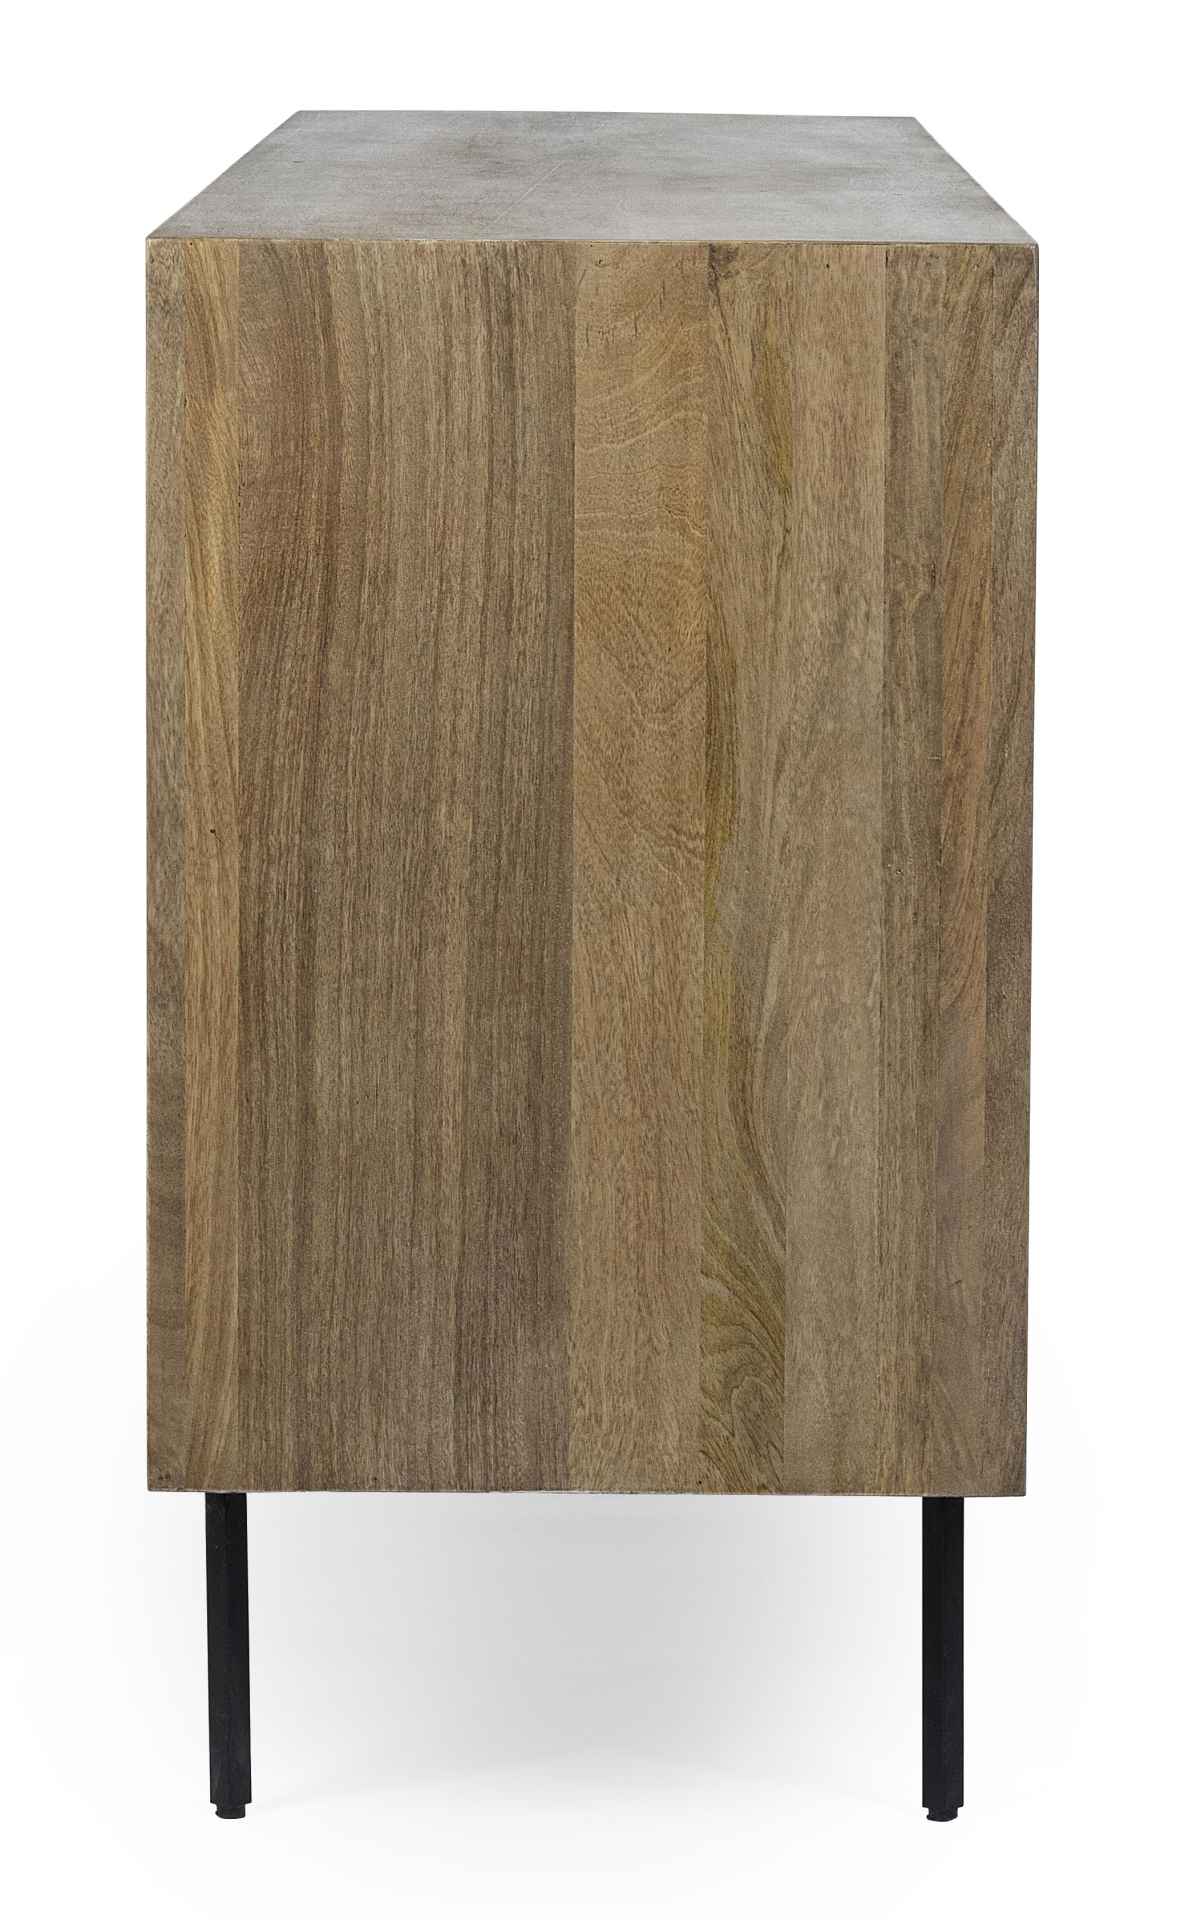 Das Sideboard Darsey überzeugt mit seinem klassischen Design. Gefertigt wurde es aus Mango-Holz, welches einen natürlichen Farbton besitzt. Das Gestell ist aus Metall und hat eine schwarze Farbe. Das Sideboard verfügt über drei Türen. Die Breite beträgt 1